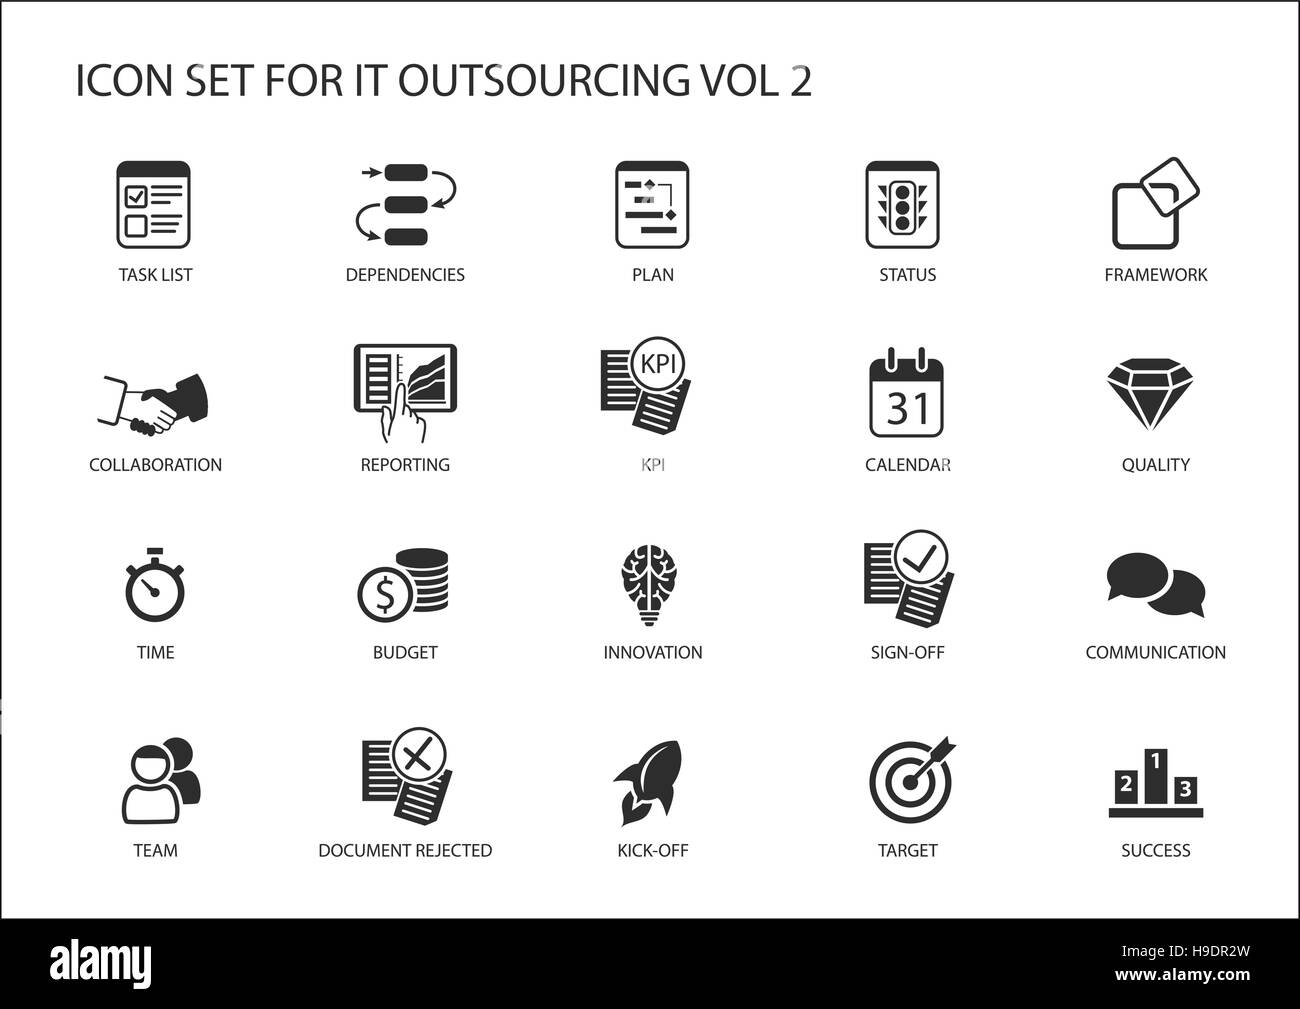 Varie IT outsourcing e offshore modello icone vettoriali globale in un modello operativo Illustrazione Vettoriale